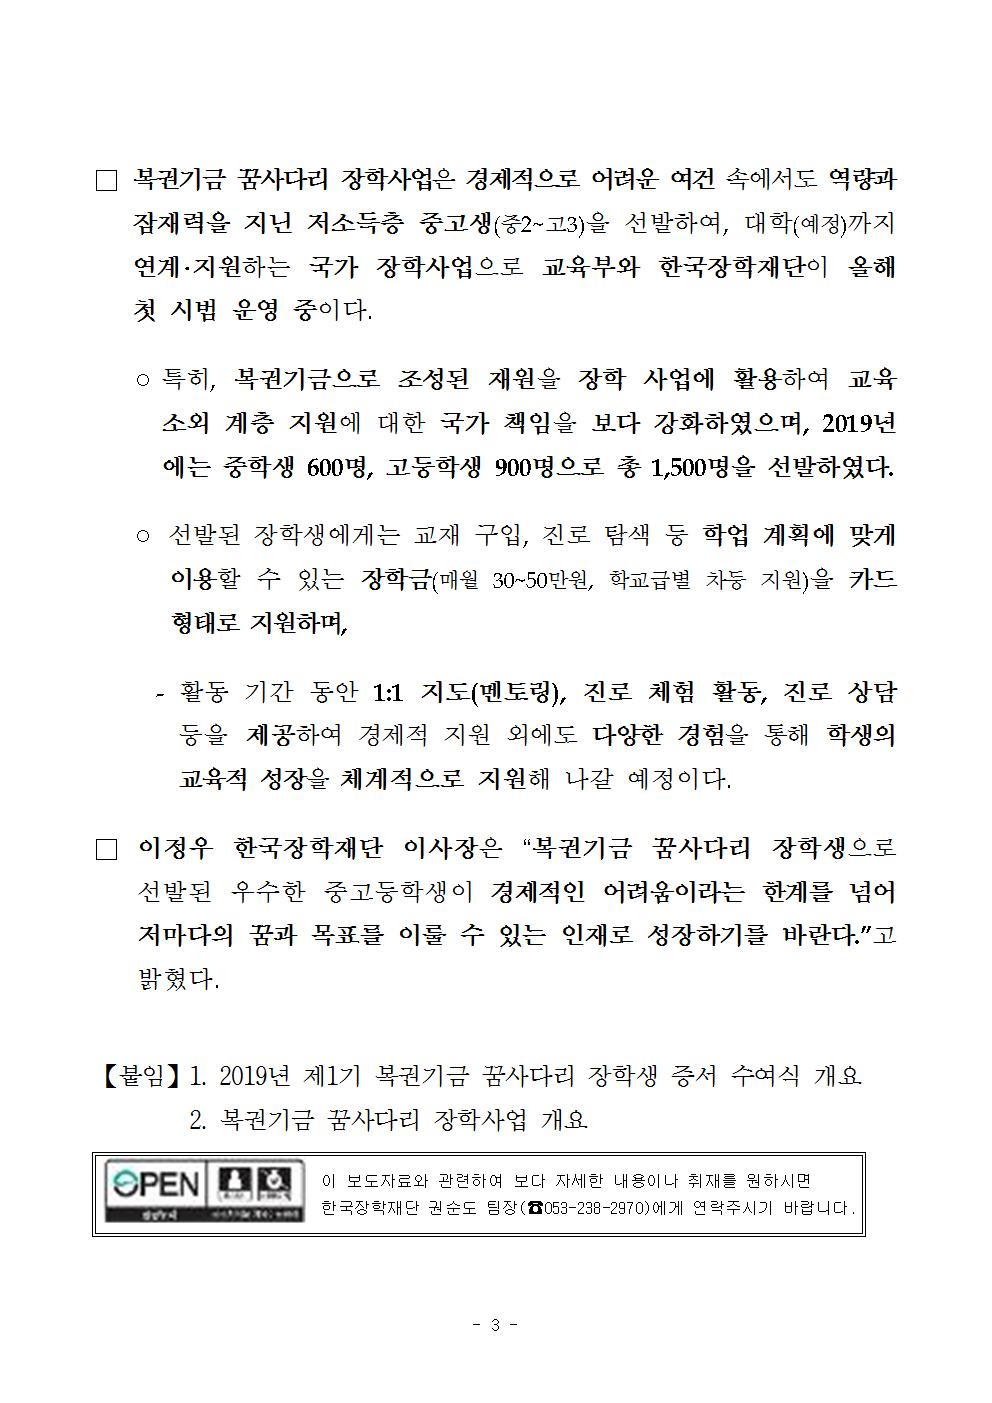 07-26(금)[보도자료] 복권기금 꿈사다리 장학사업 장학증서 수여식 개최003.jpg